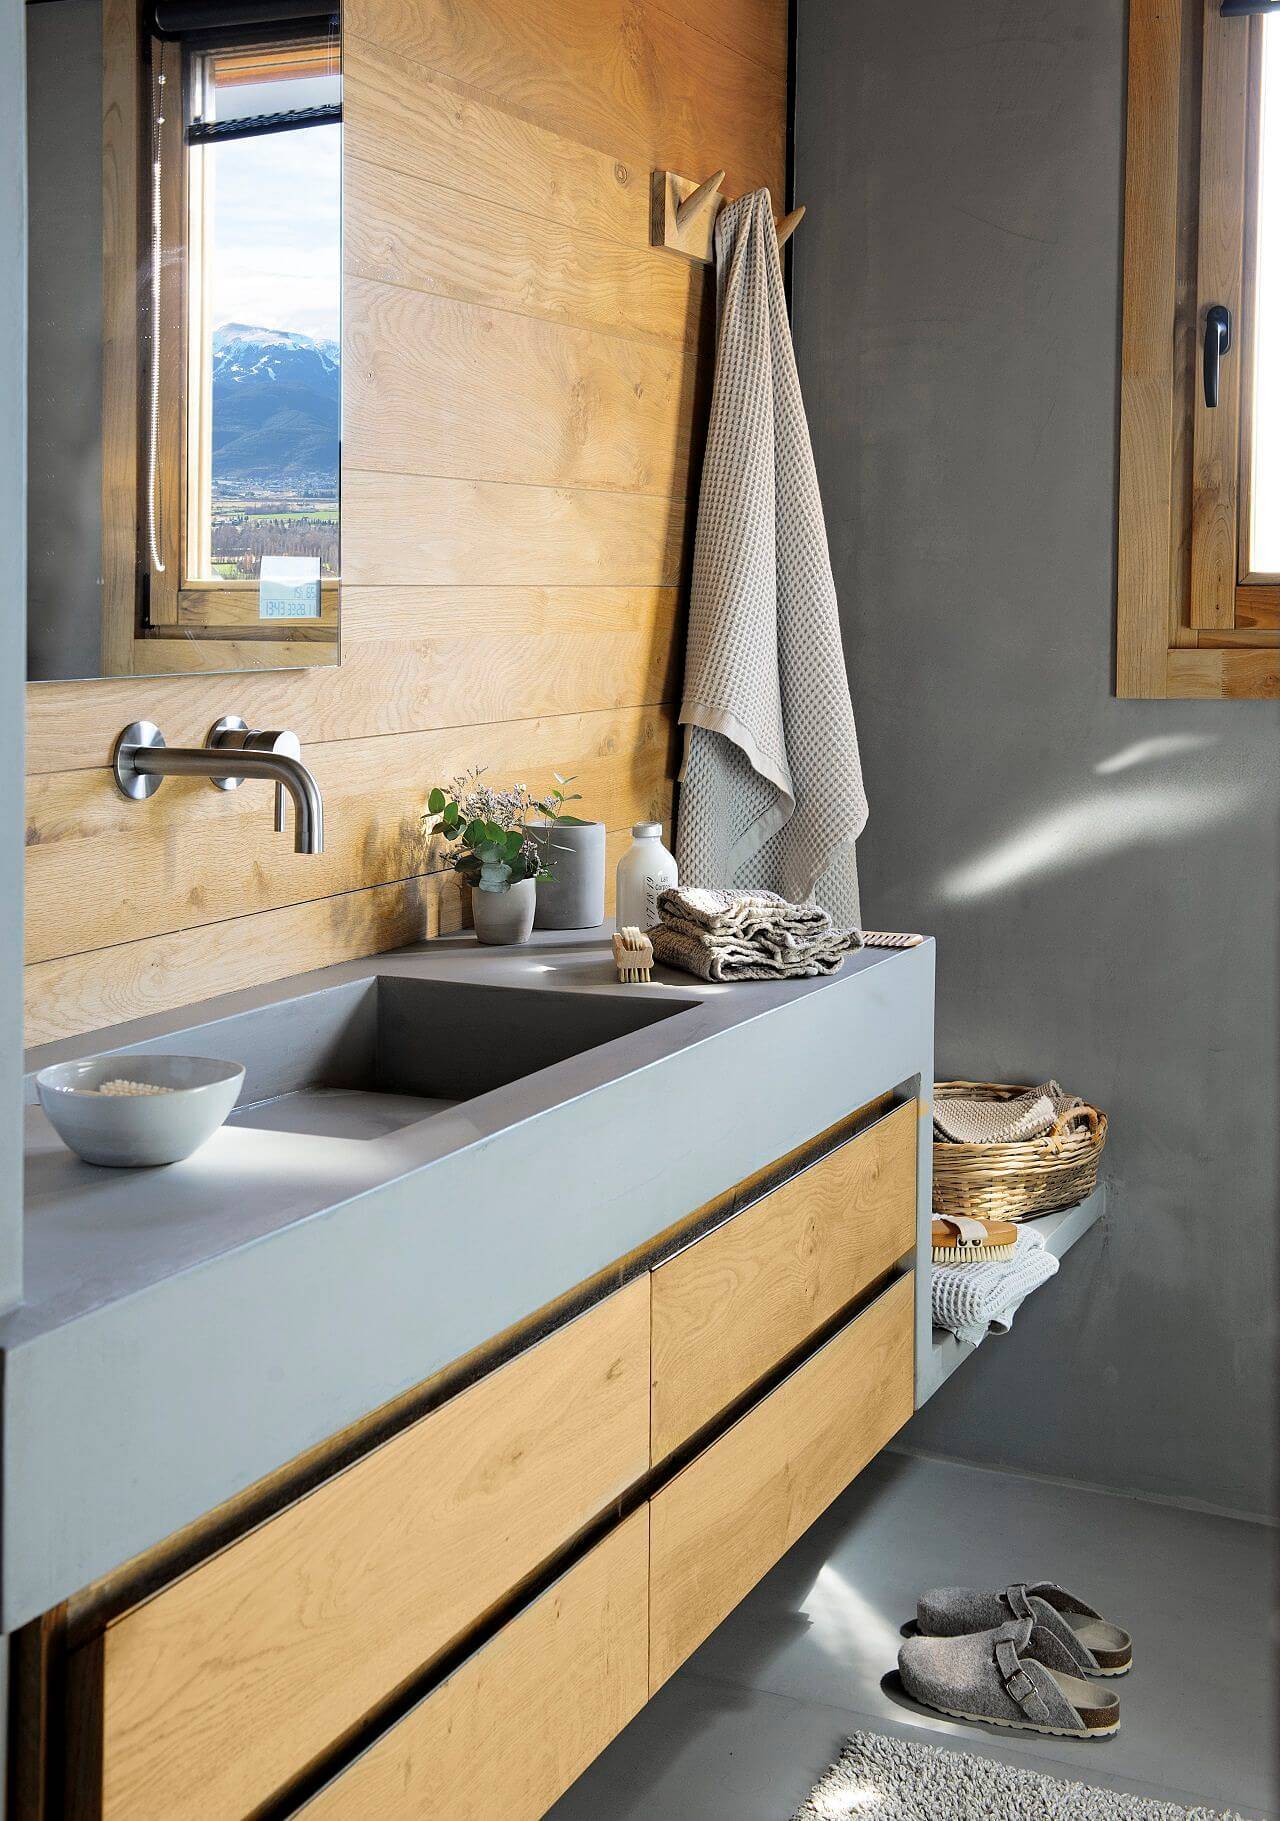 Baño moderno en gris y madera